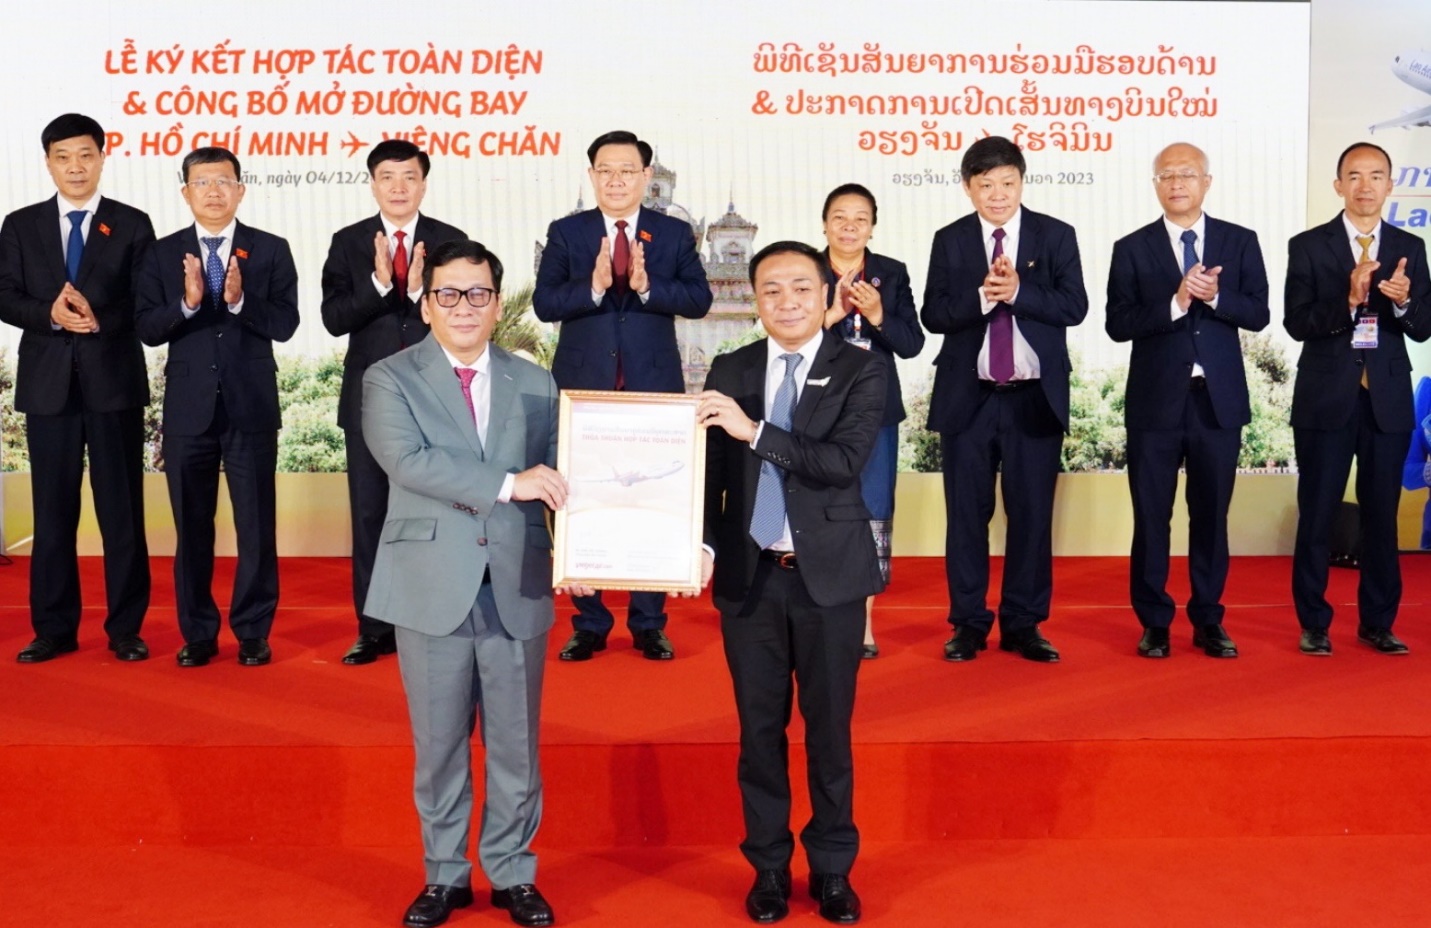 Vietjet hợp tác toàn diện với Lao Airlines, mở đường bay TP.HCM - Viêng Chăn - Ảnh 1.